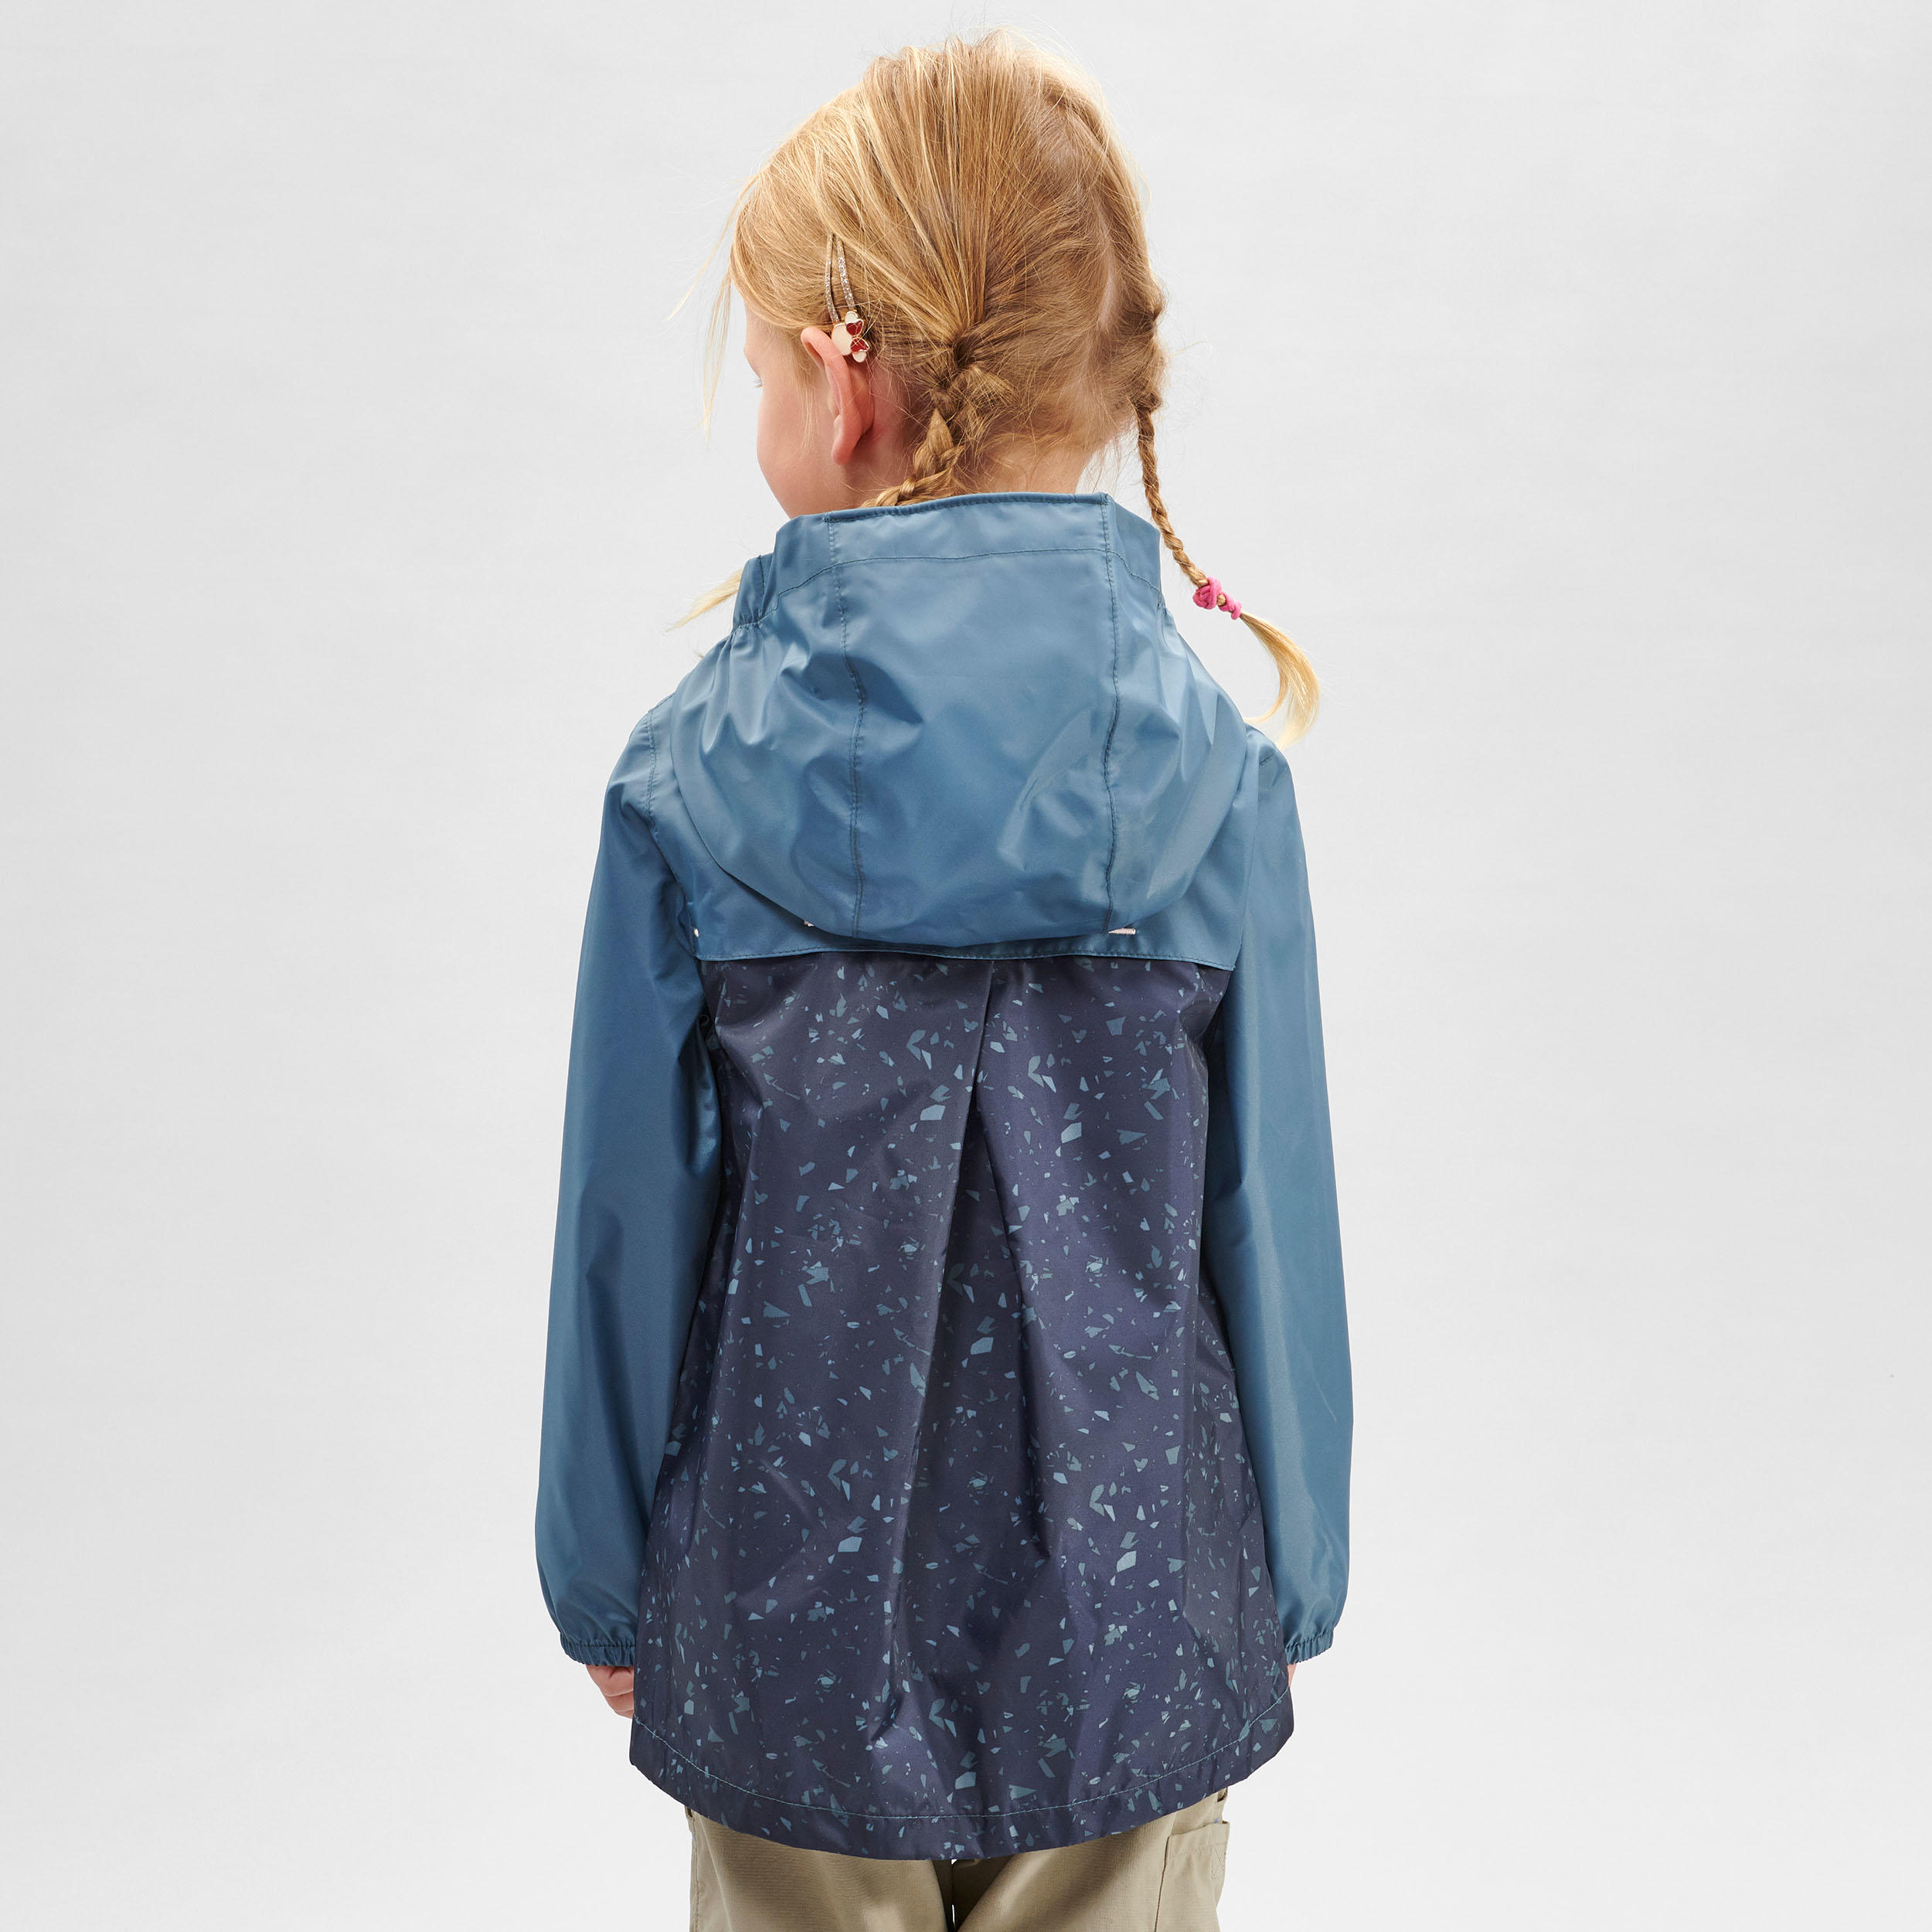 Kids’ Waterproof Hiking Jacket - MH100 Zip - Aged 2-6 4/8